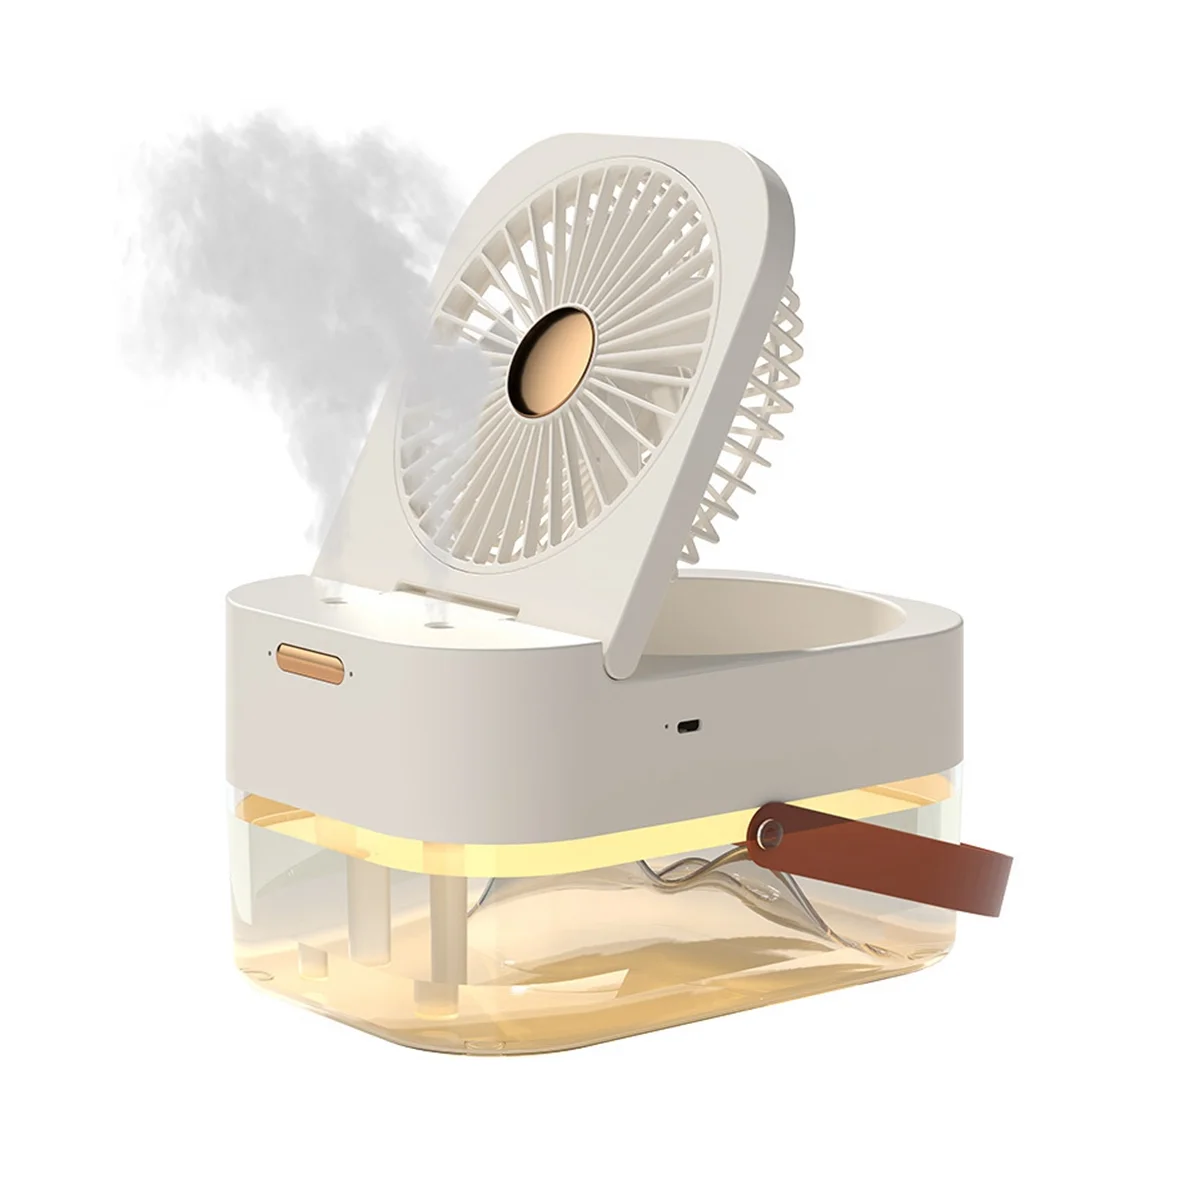 Вентилятор-увлажнитель воздуха Портативный вентилятор-охладитель воздуха увлажнитель воздуха USB-вентилятор Настольный вентилятор с ночником для летней бытовой техники, A